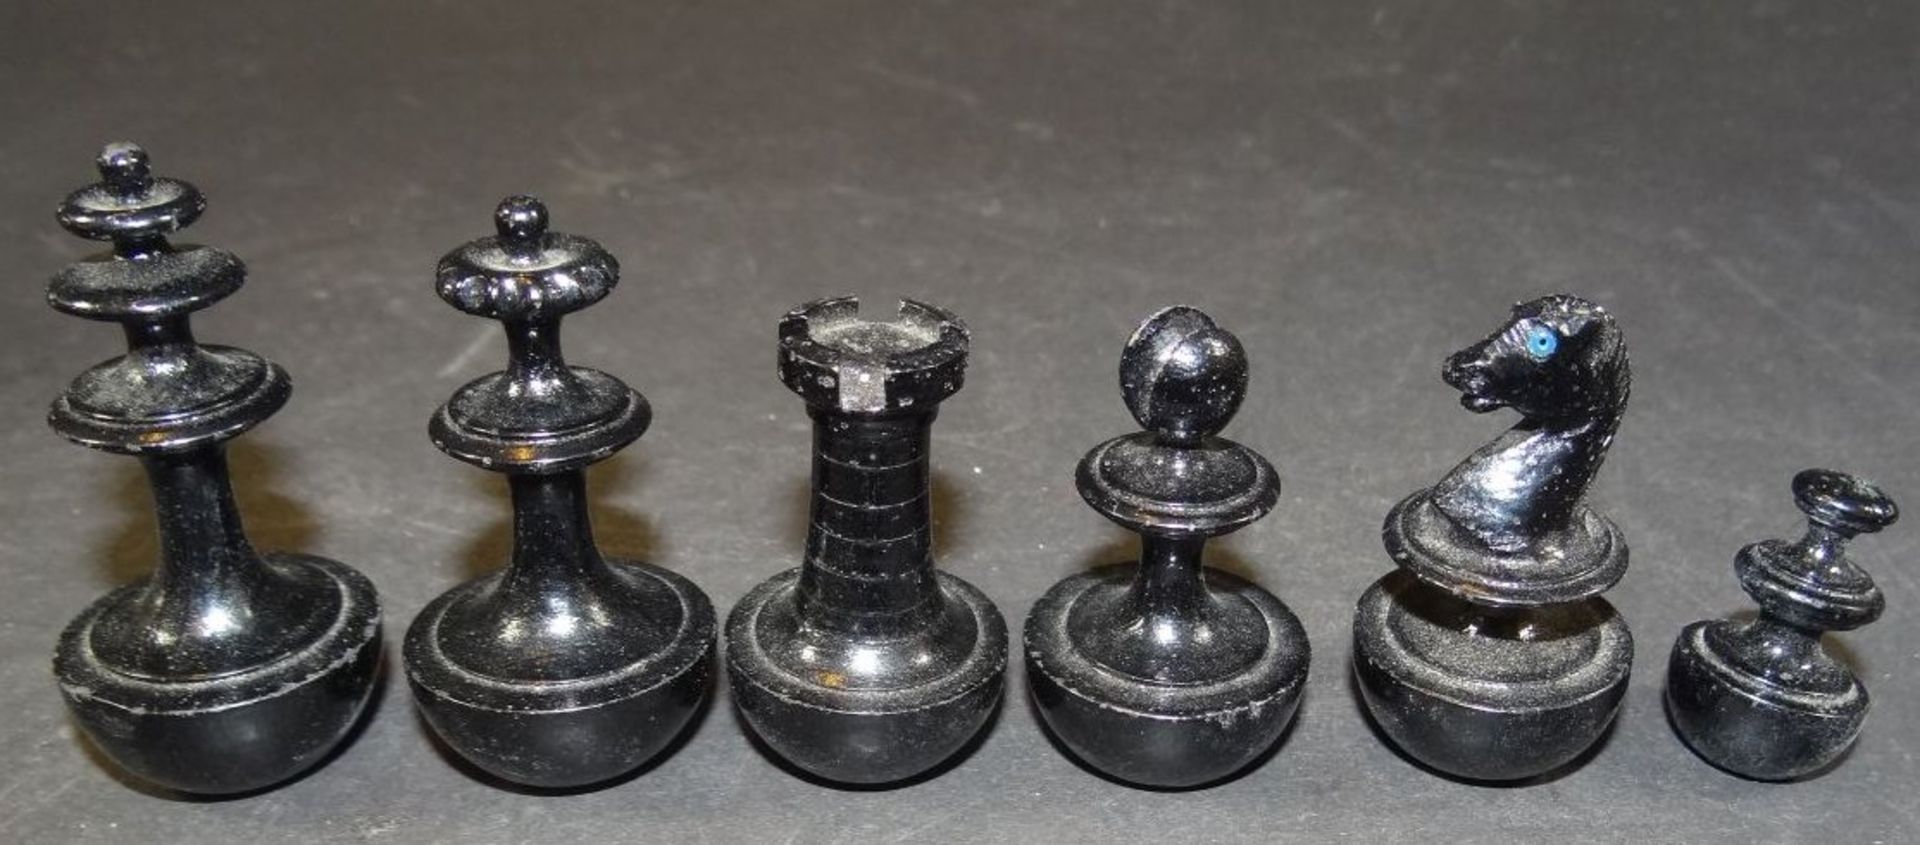 Holzkasten mit 32 Schachfiguren aus Holz, H-max. 6 cm - Bild 2 aus 4